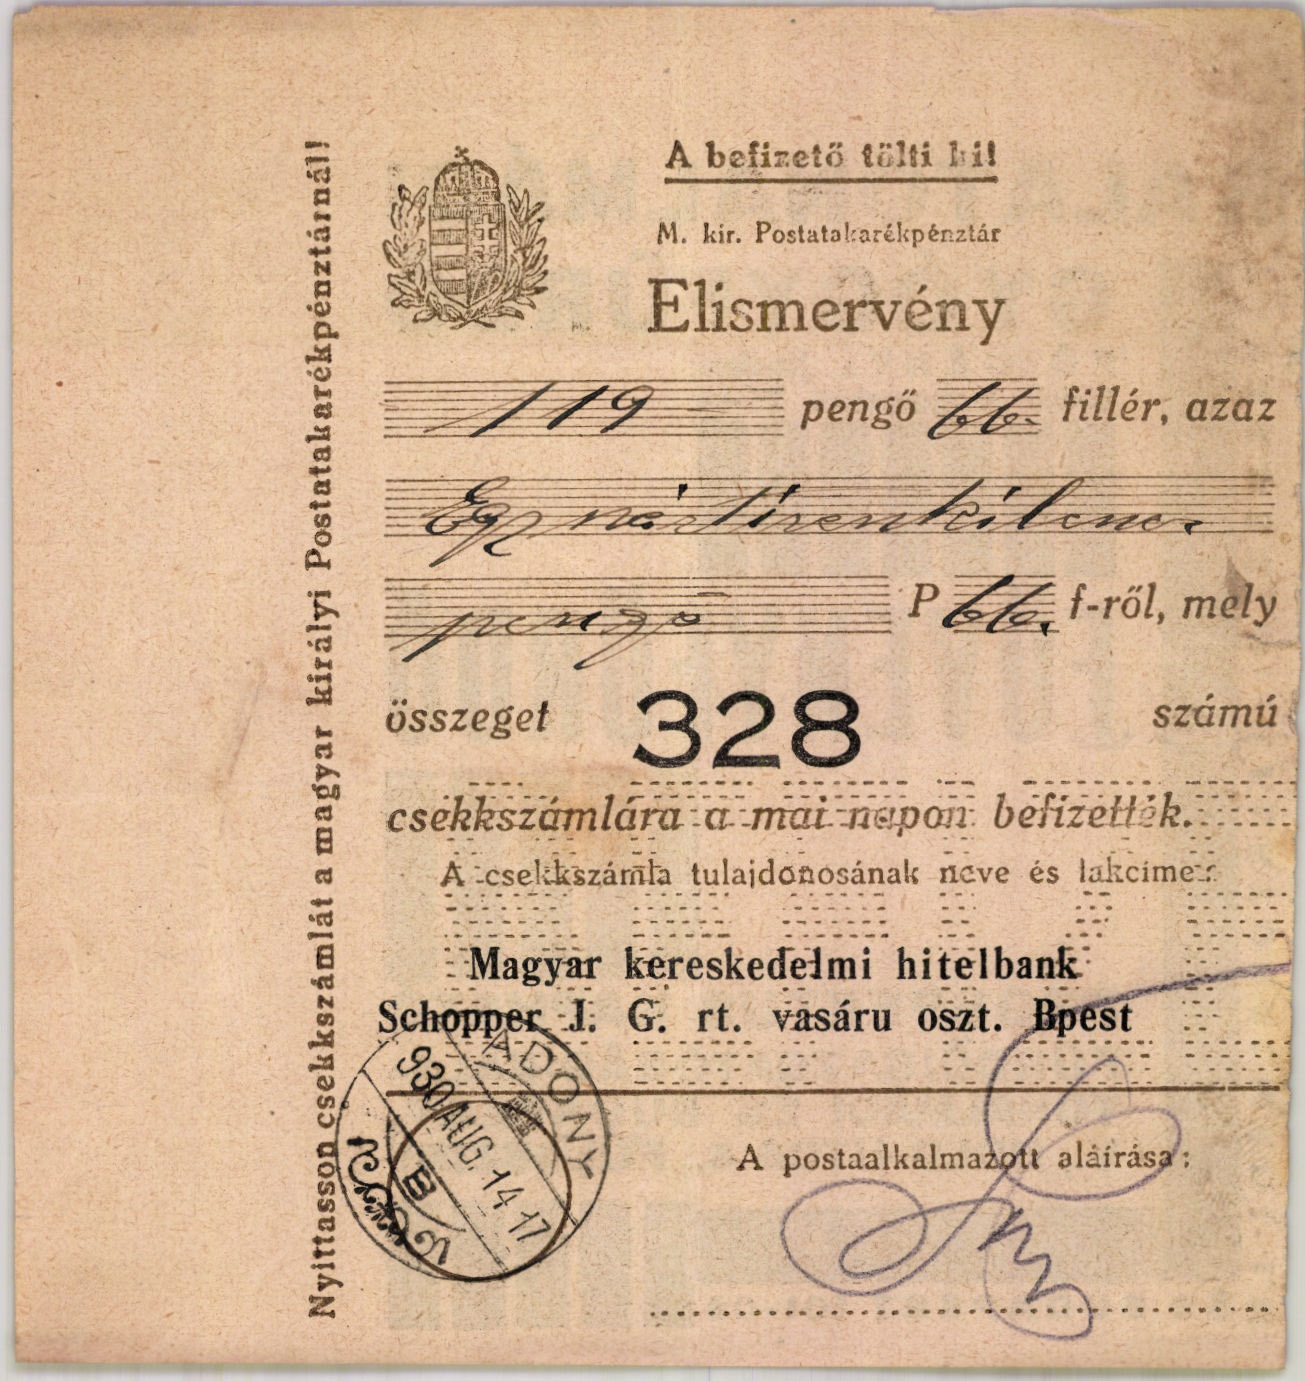 Schopper J. G. rt. vasáru osztály (Magyar Kereskedelmi és Vendéglátóipari Múzeum CC BY-NC-SA)